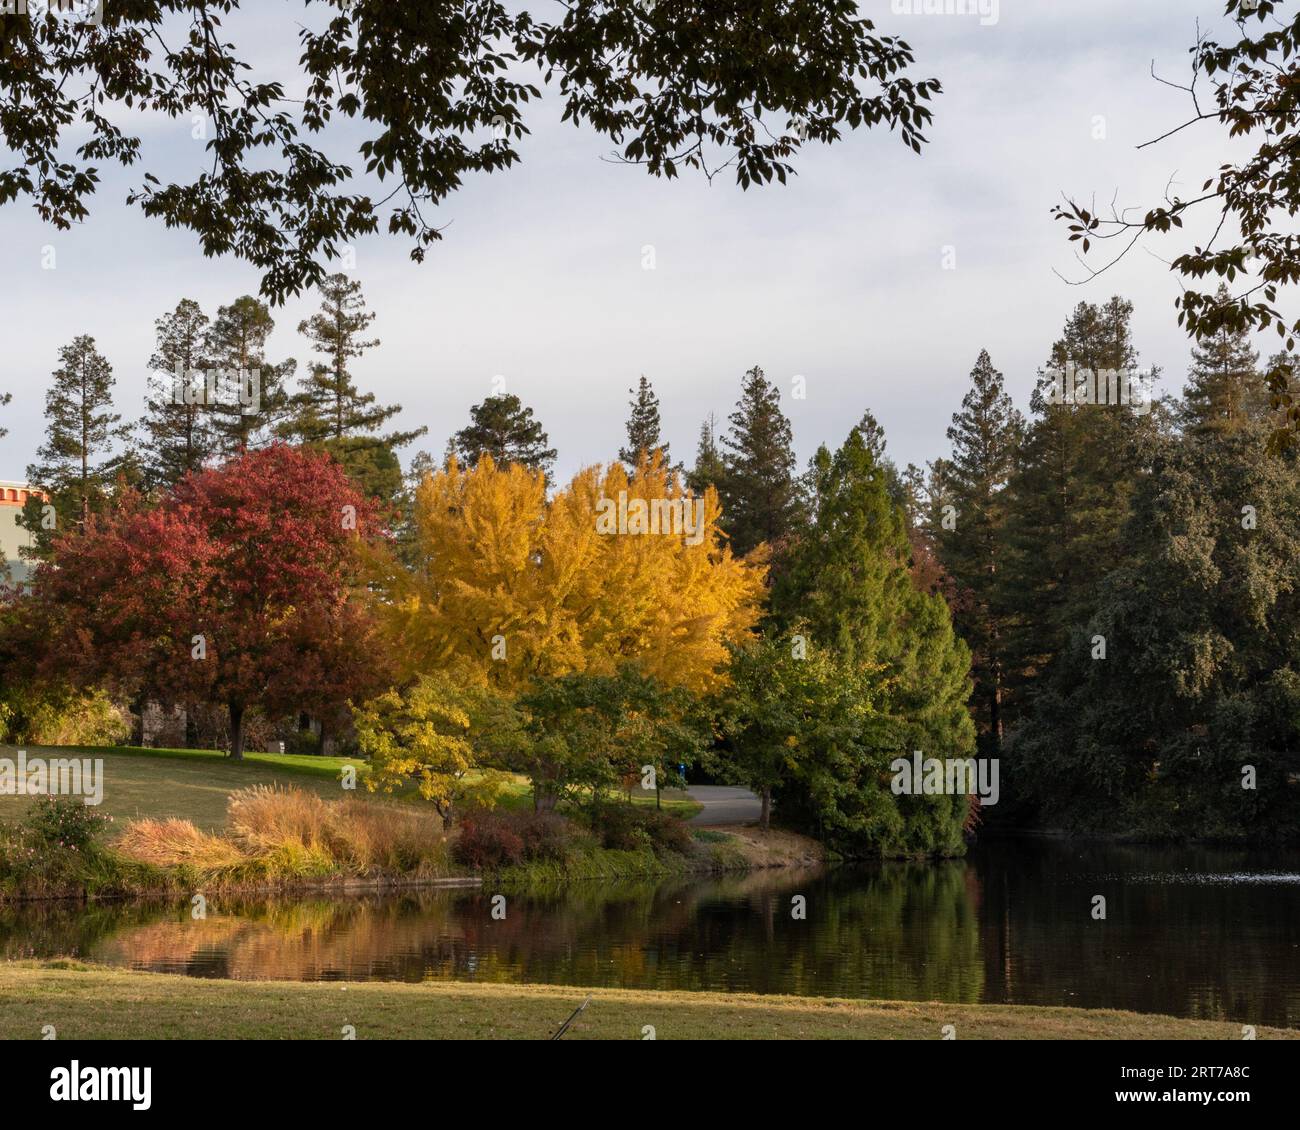 Couleurs d'automne à l'extrémité est de l'arboretum UC Davis au-dessus du lac Spafford Banque D'Images